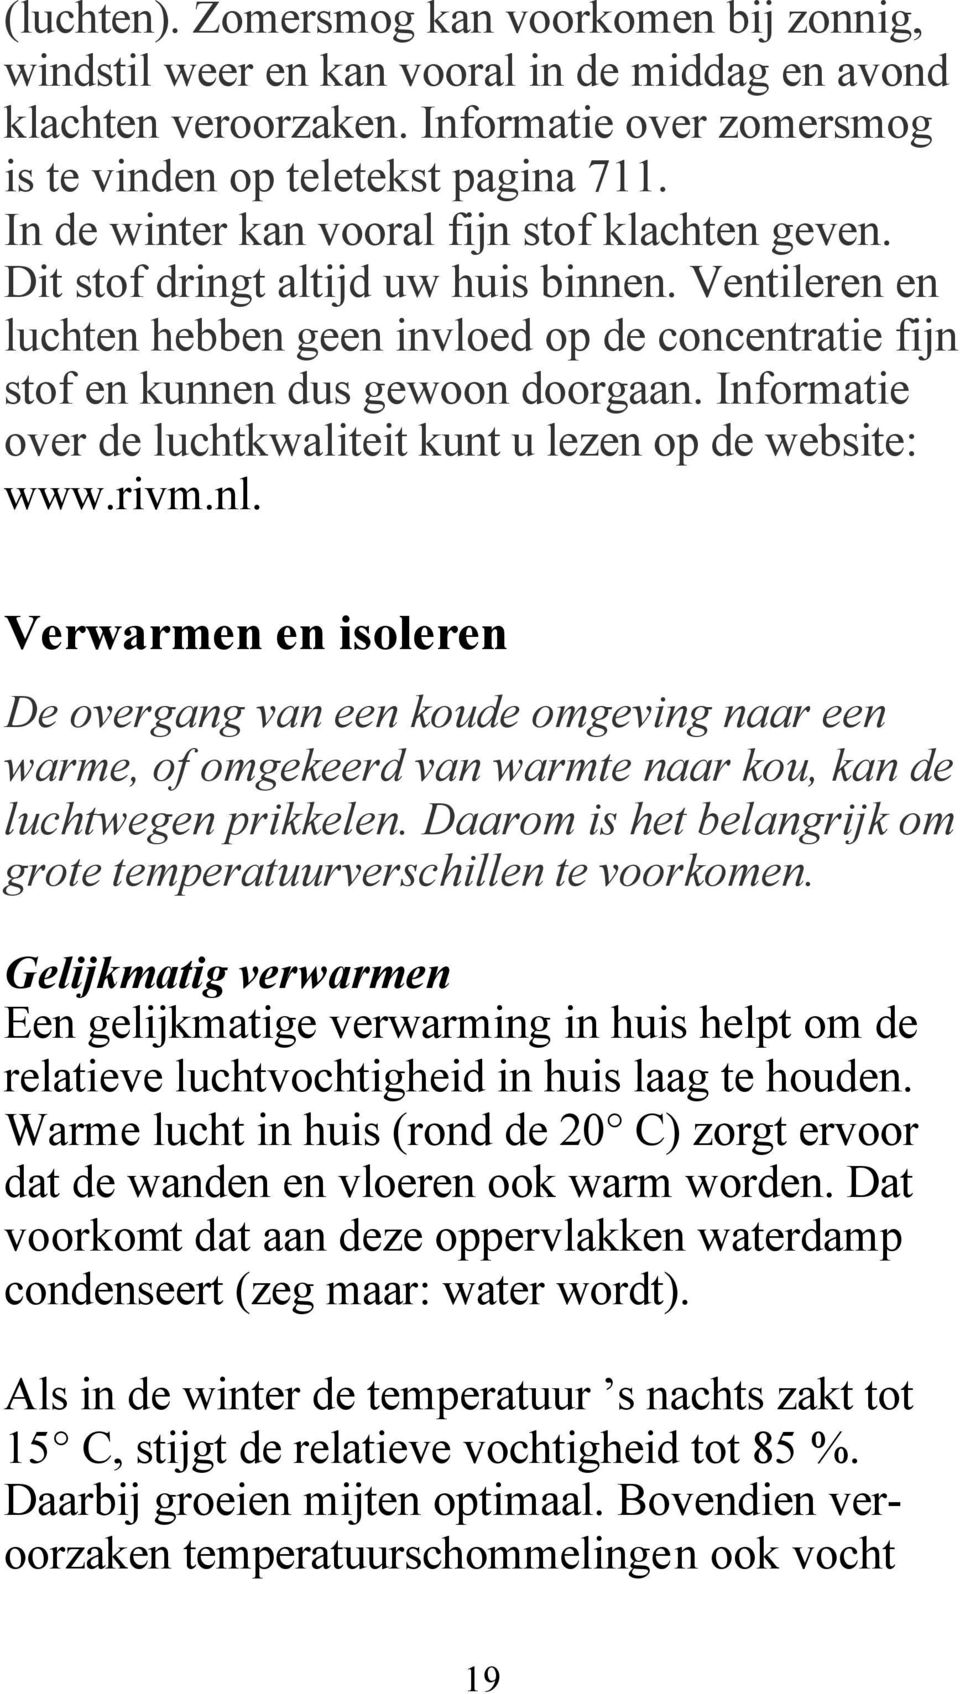 Informatie over de luchtkwaliteit kunt u lezen op de website: www.rivm.nl.